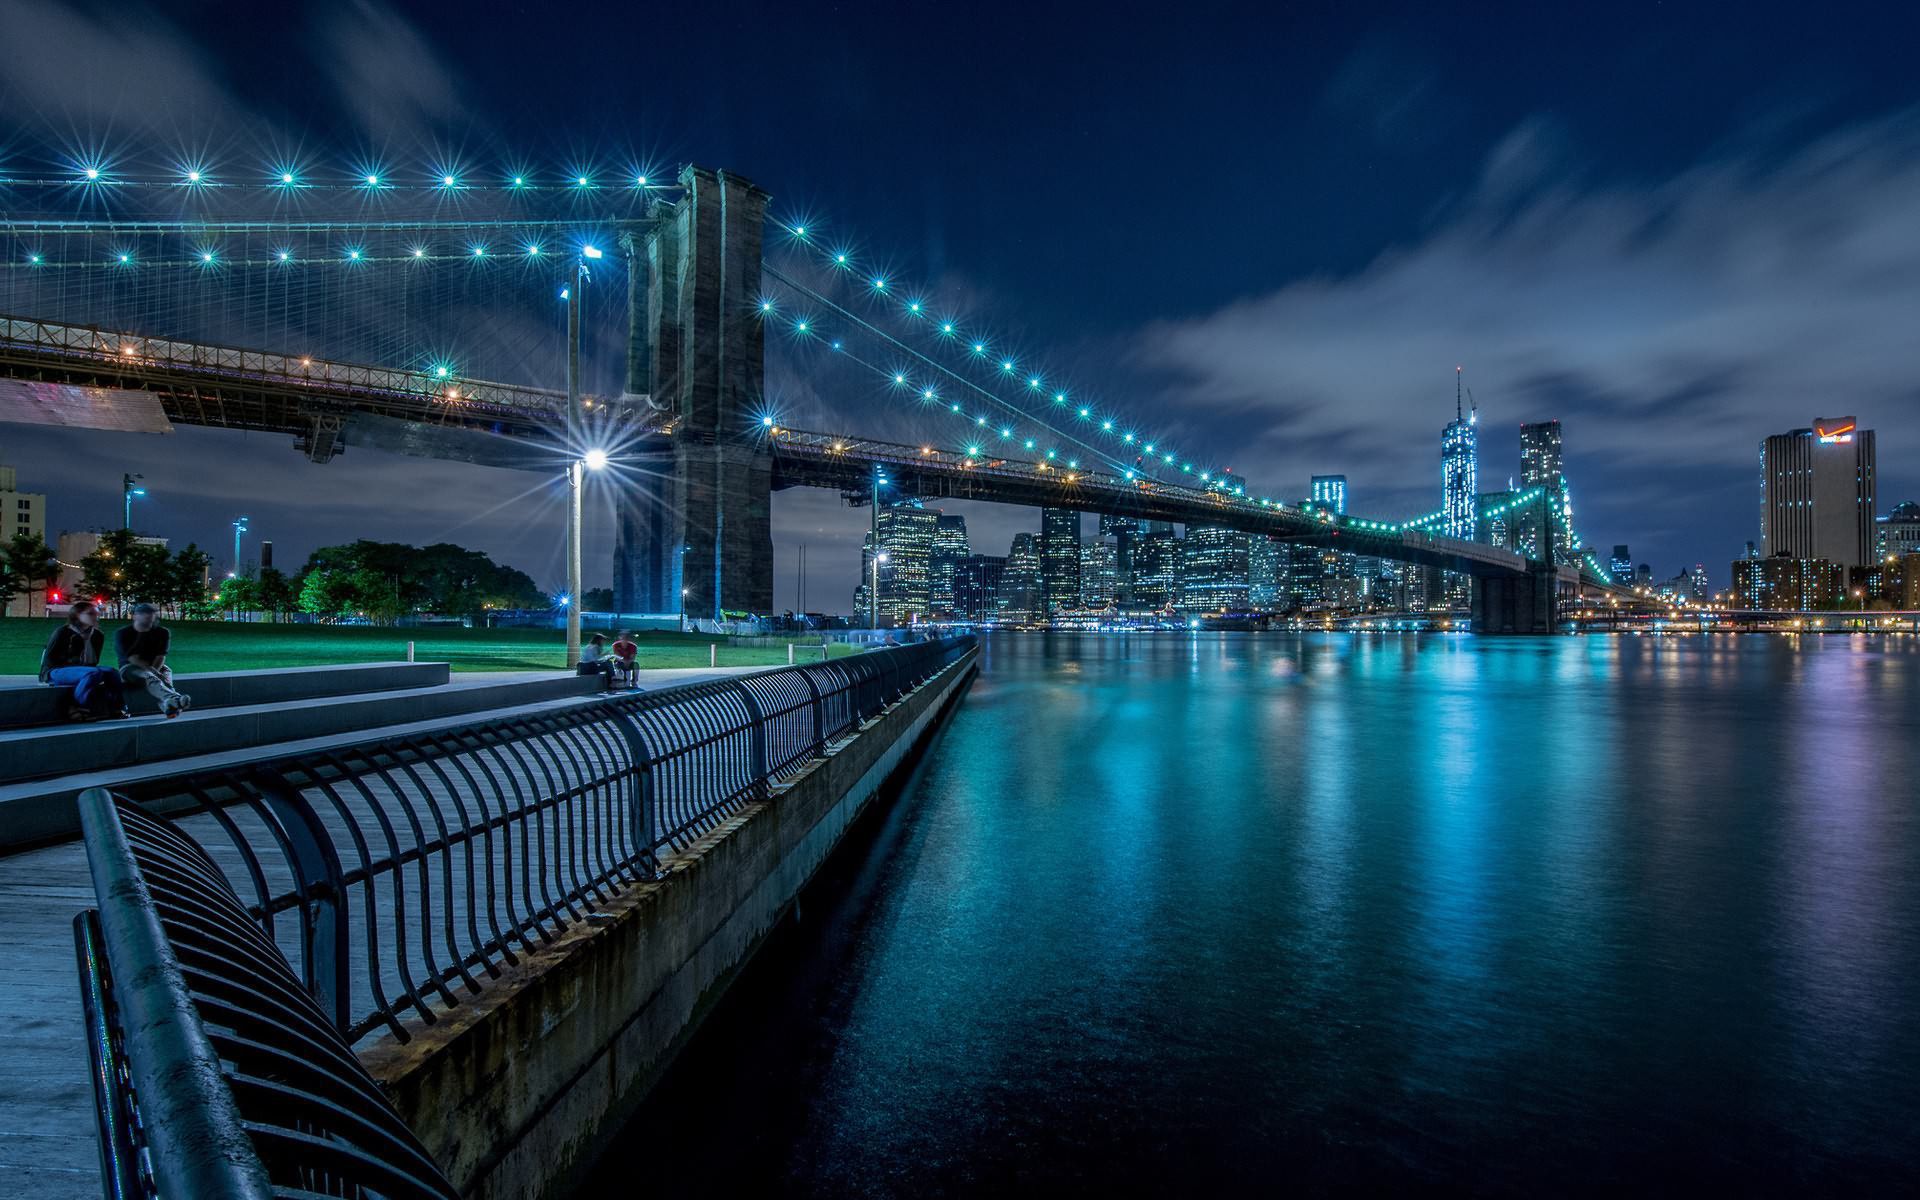 papier peint pont de brooklyn,zone métropolitaine,pont,paysage urbain,nuit,bleu